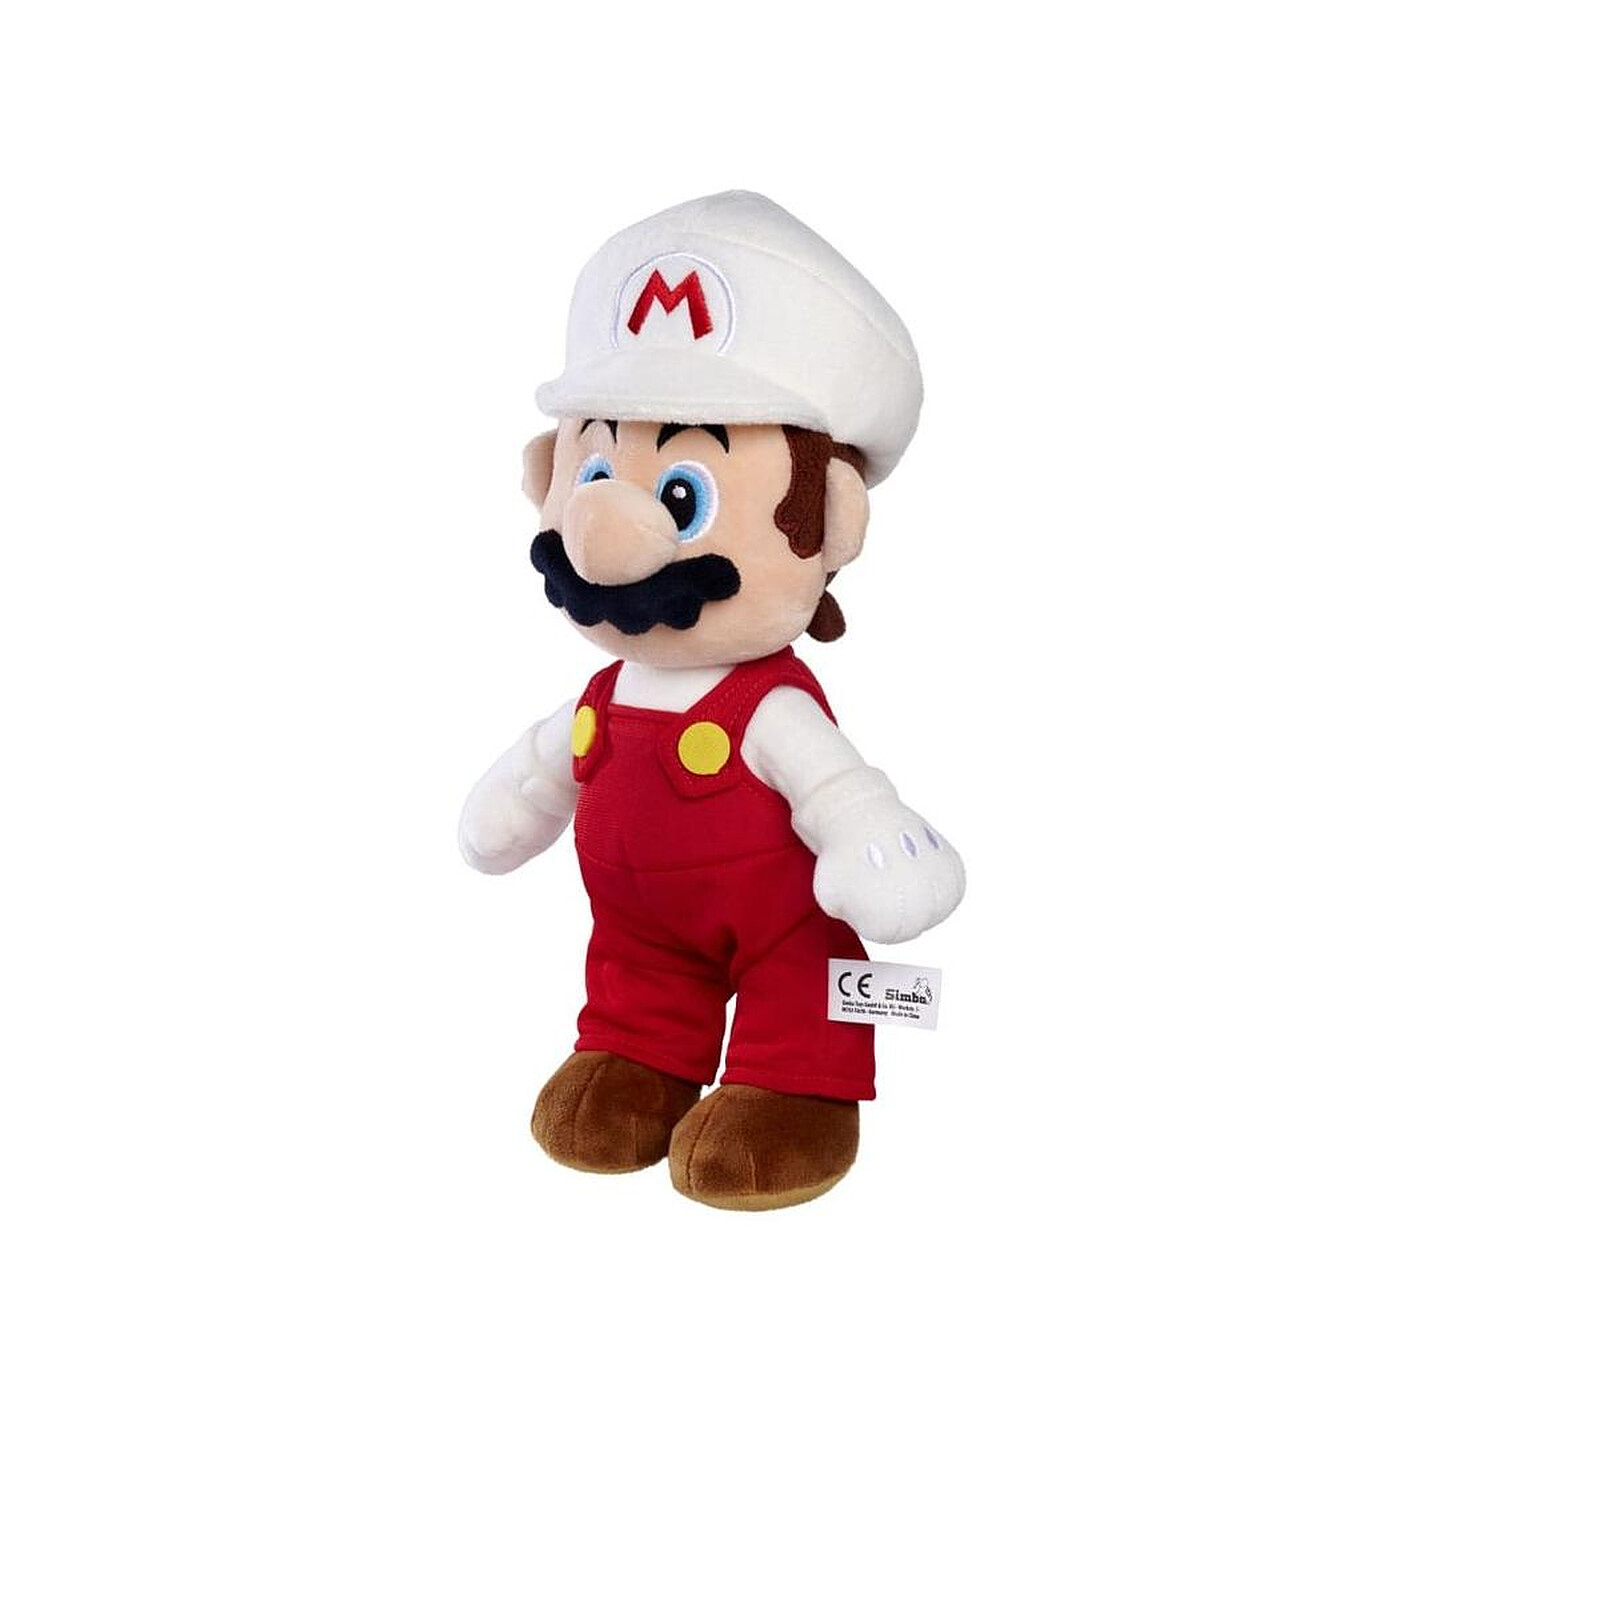 Super Mario - Peluche Fire Mario 30 cm - Peluches - LDLC